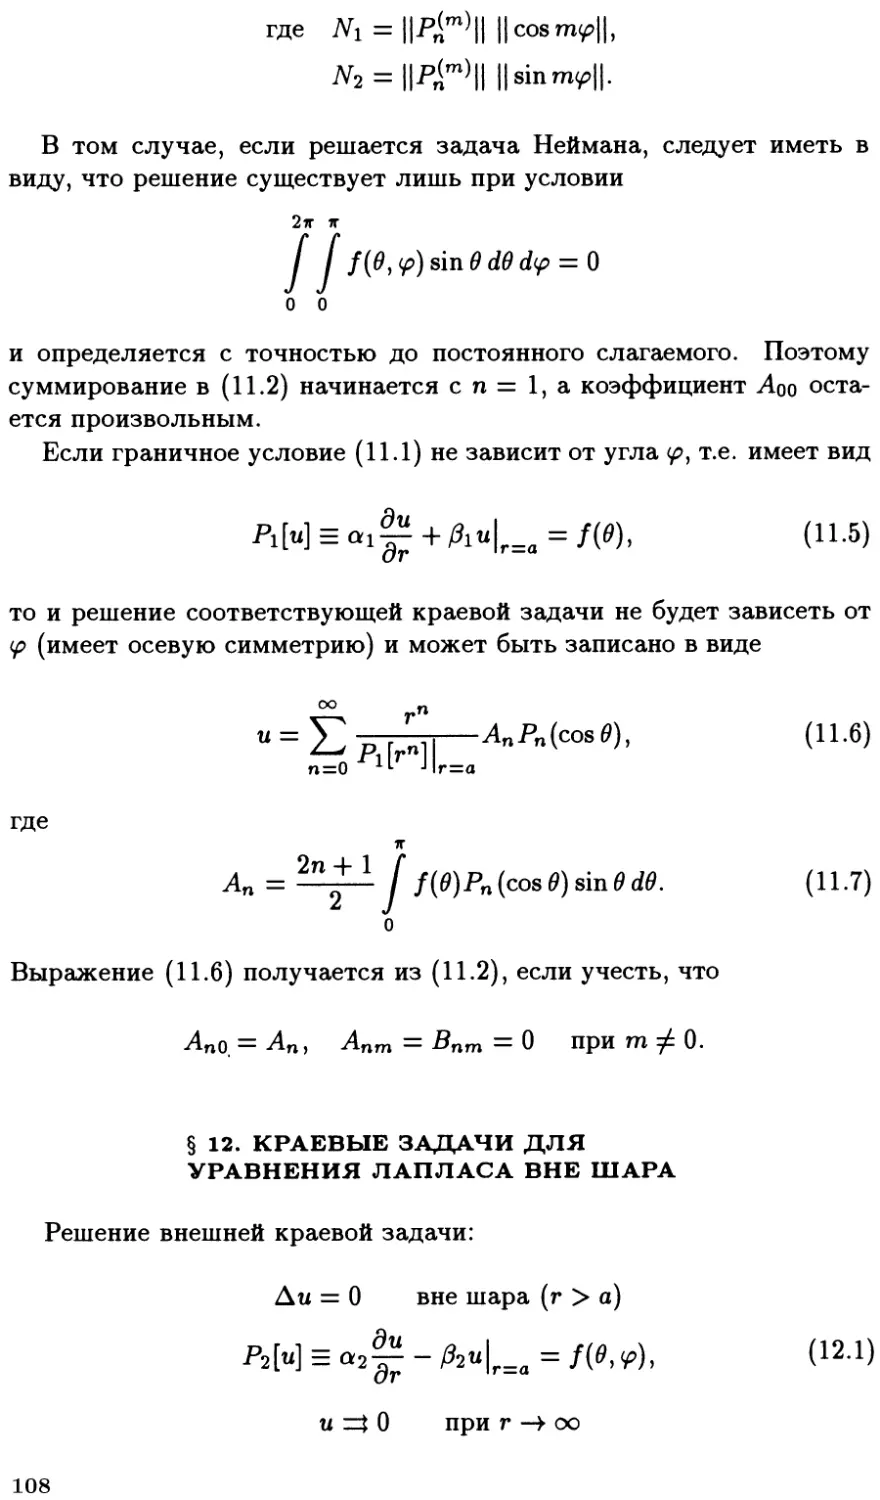 §12. Краевые задачи для уравнения Лапласа вне шара